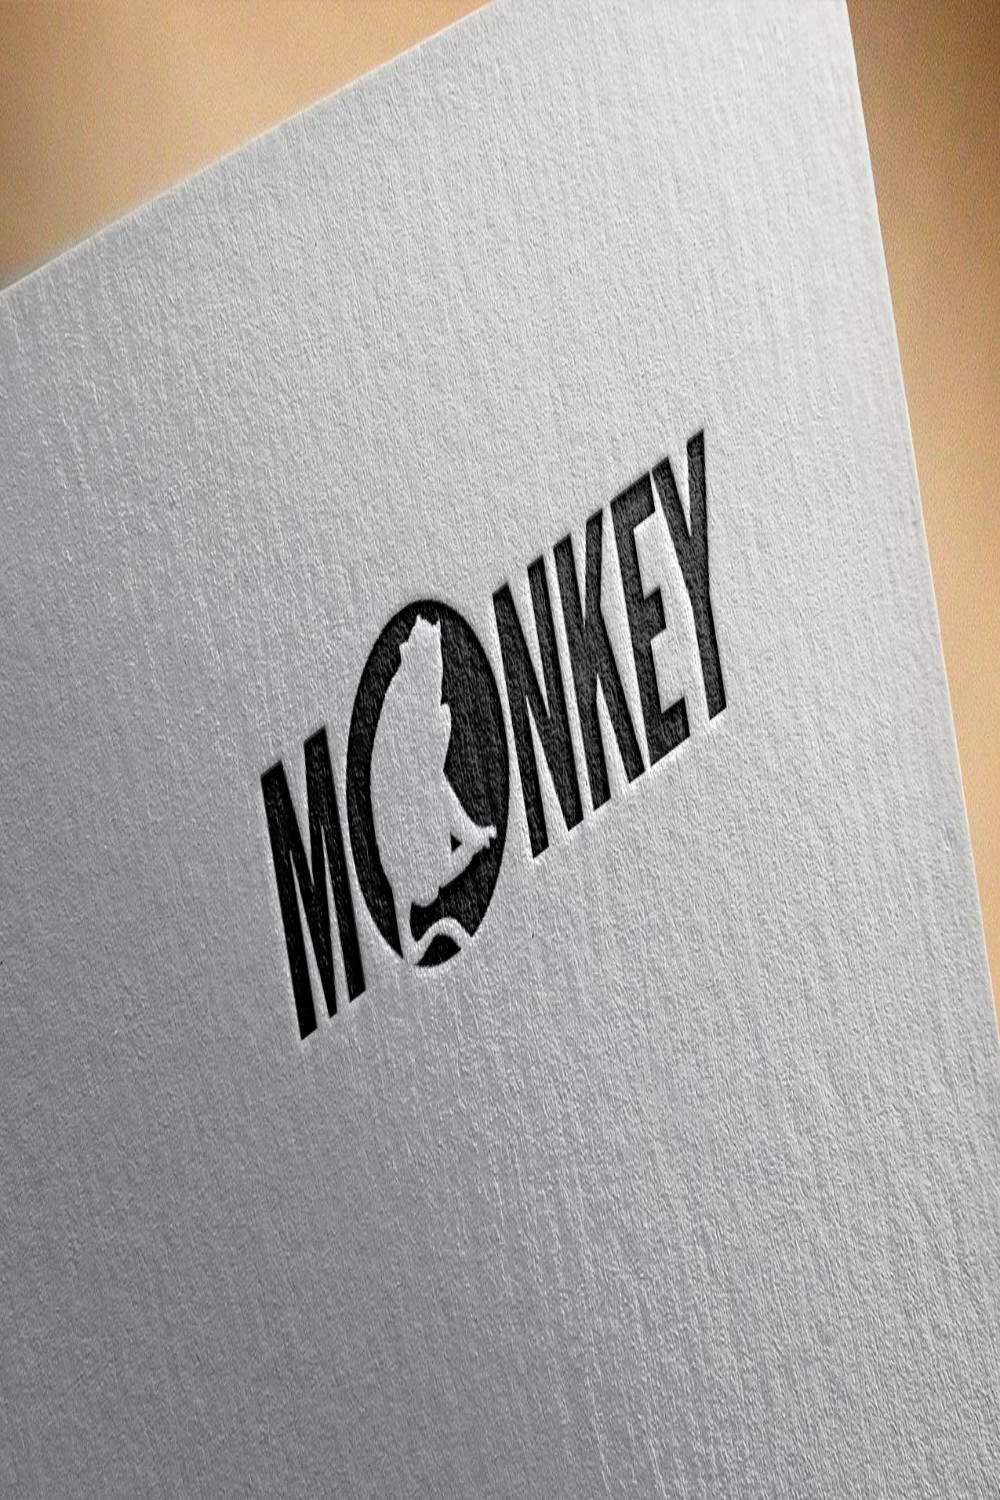 Monkey Logo Design Pinterest image.